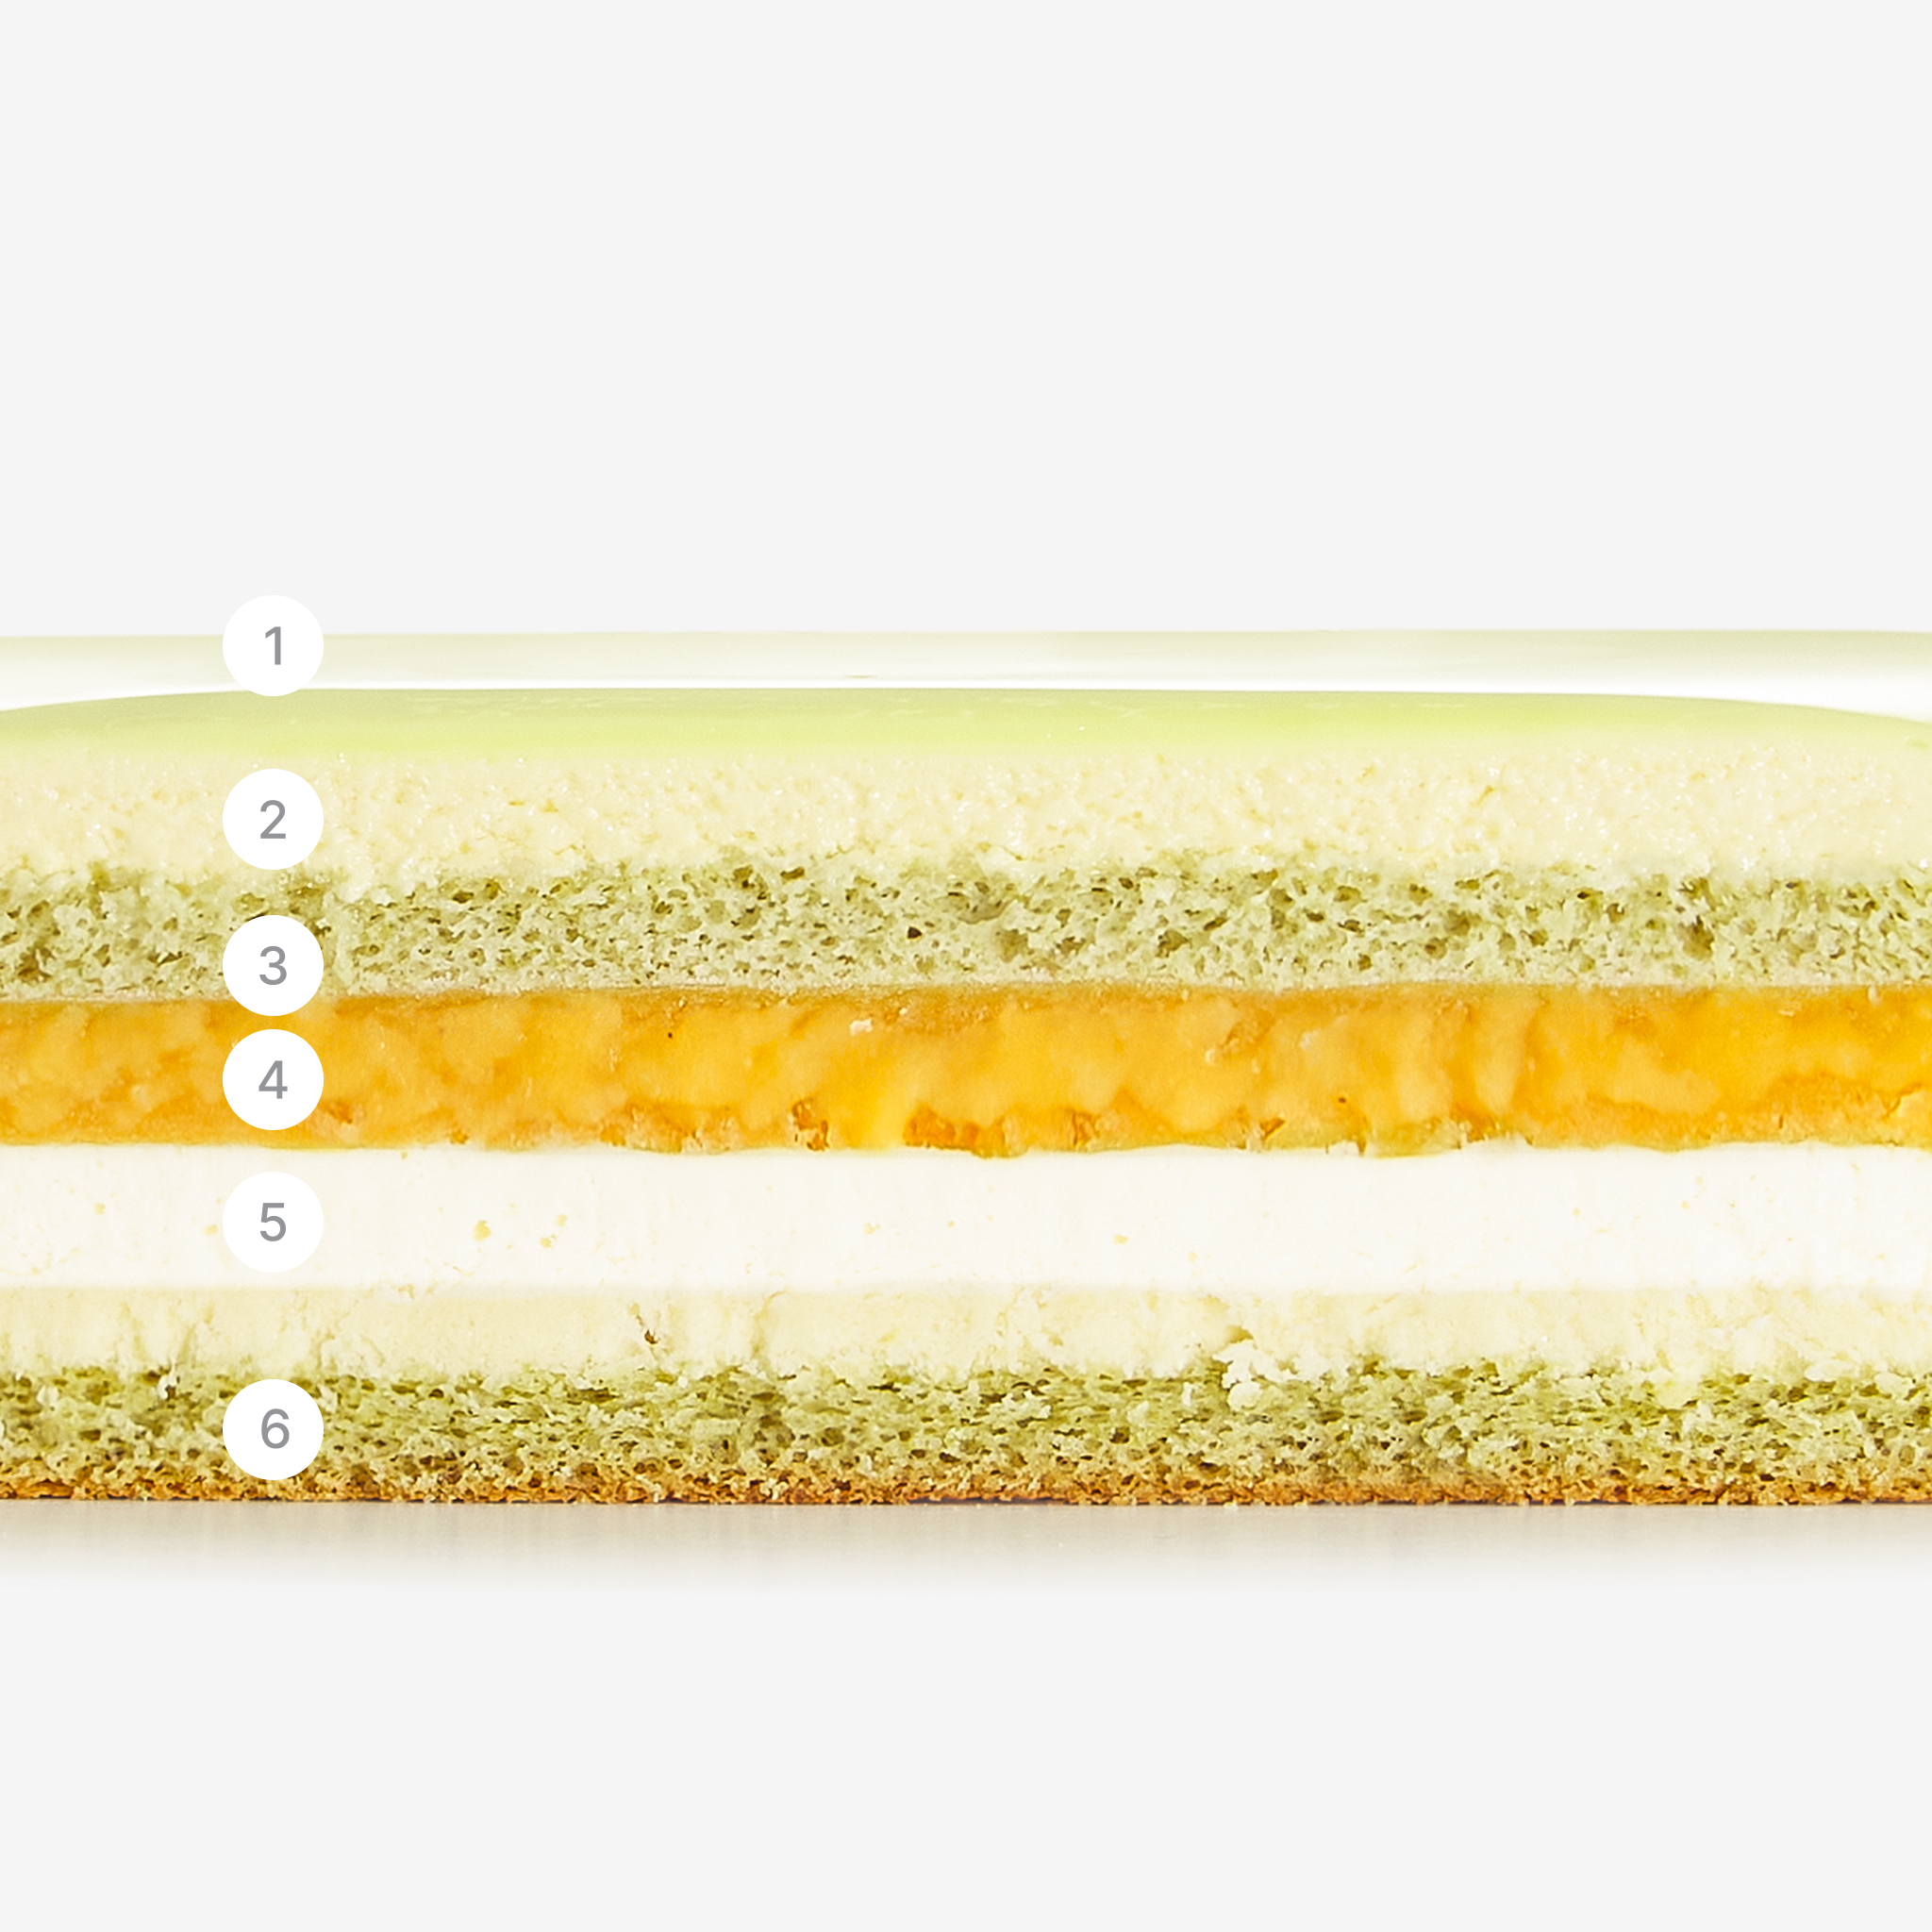 LaFuong Pastry – Orient Scent – Xoài, Lá dứa & Phô mai. Một chiếc bánh có thiết kế tối giản, lịch thiệp, nhưng chứa đựng một ý nghĩa sâu sắc.. Chiếc bánh Orient Scent được ra đời với thông điệp về sự đủ đầy & tốt lành. “Trời tròn - Đất vuông” đơn giản như vậy, tạo hình trên nền tráng gương màu xanh lá dịu mát có hình vuông tượng trưng cho đất & hình tròn tượng trưng cho trời. Hương vị chủ đạo là xoài tươi và lá dứa - đậm chất Châu Á, kết hợp thêm cùng phô-mai cream cheese của Châu Âu, chiếc bánh này sẽ đem lại cảm giác tươi mát, thơm ngậy và ngọt dịu khi thưởng thức. 